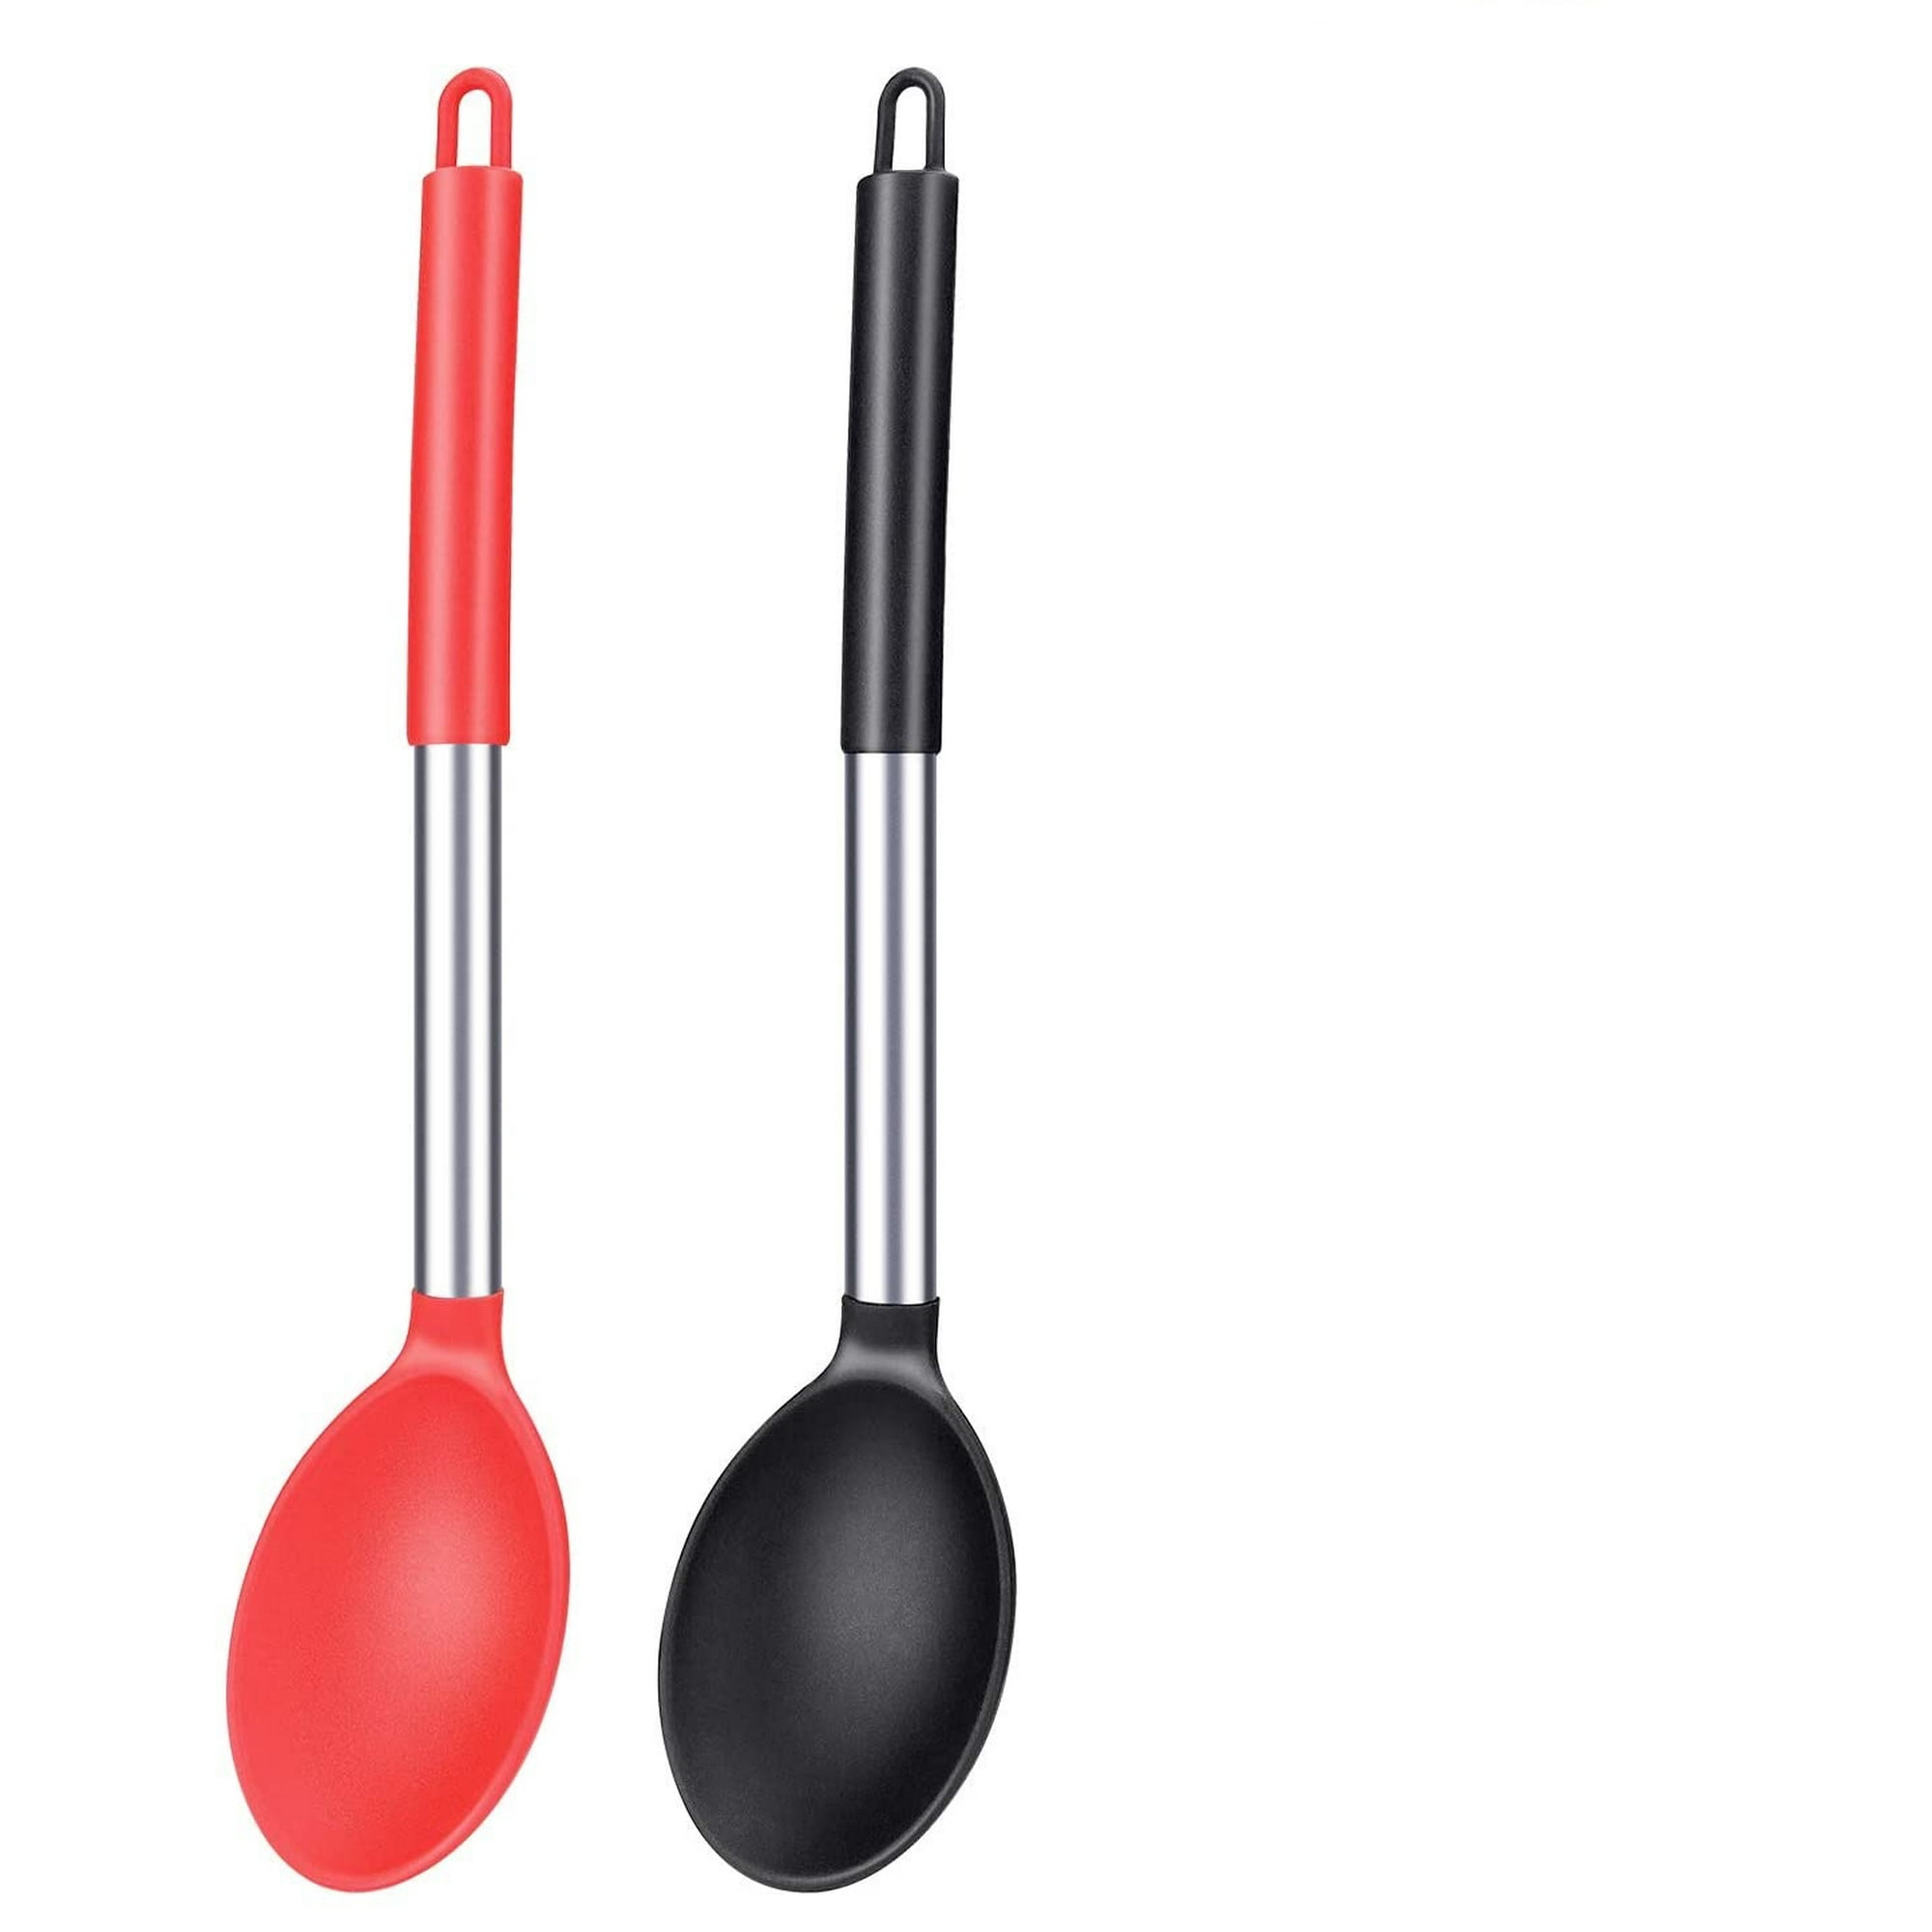 2 cucharas de silicona para cocinar, resistentes al calor, diseño